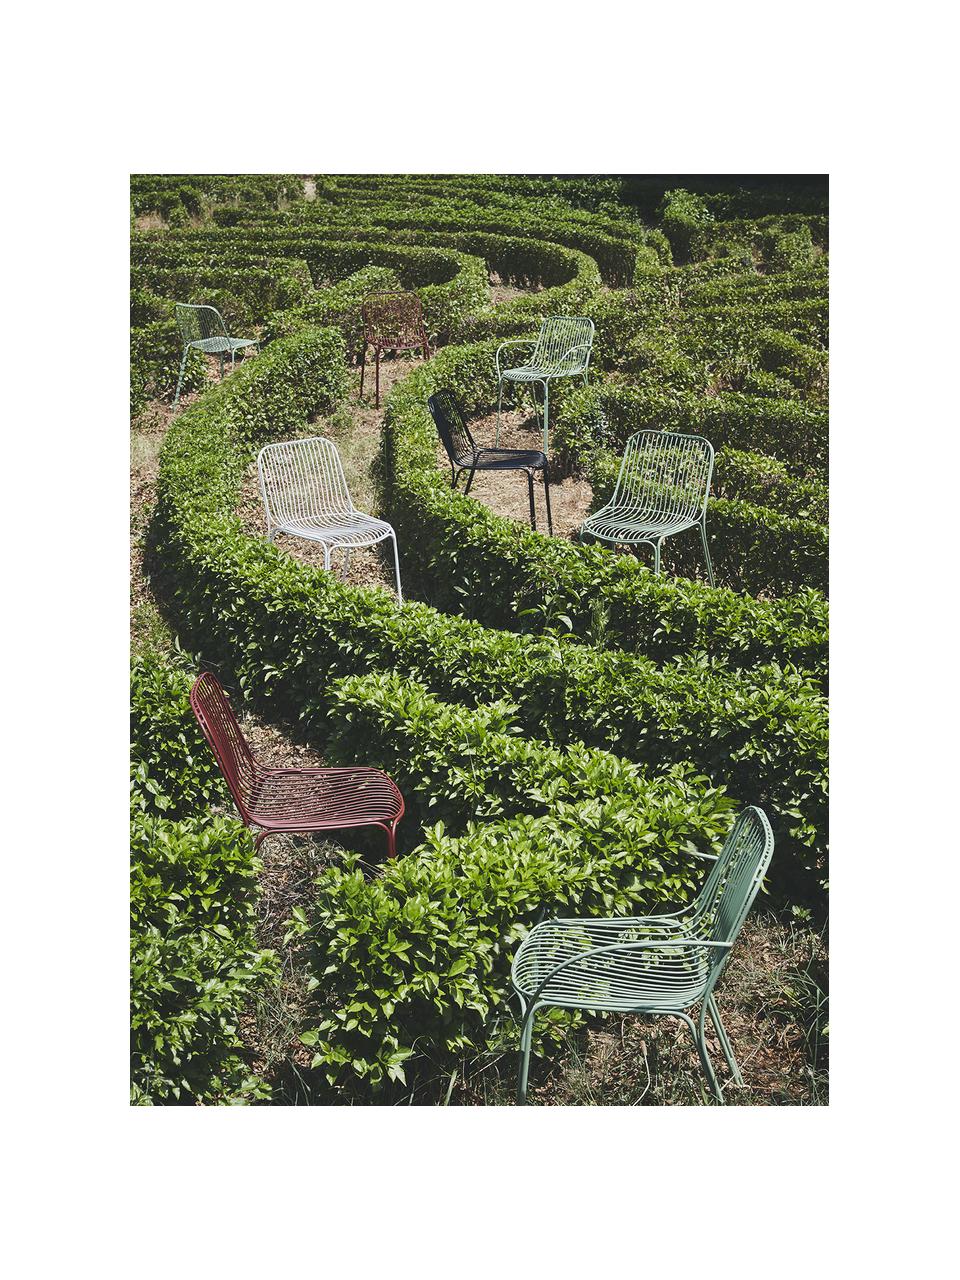 Zahradní židle Hiray, Pozinkovaná lakovaná ocel, Bílá, Š 53 cm, V 55 cm